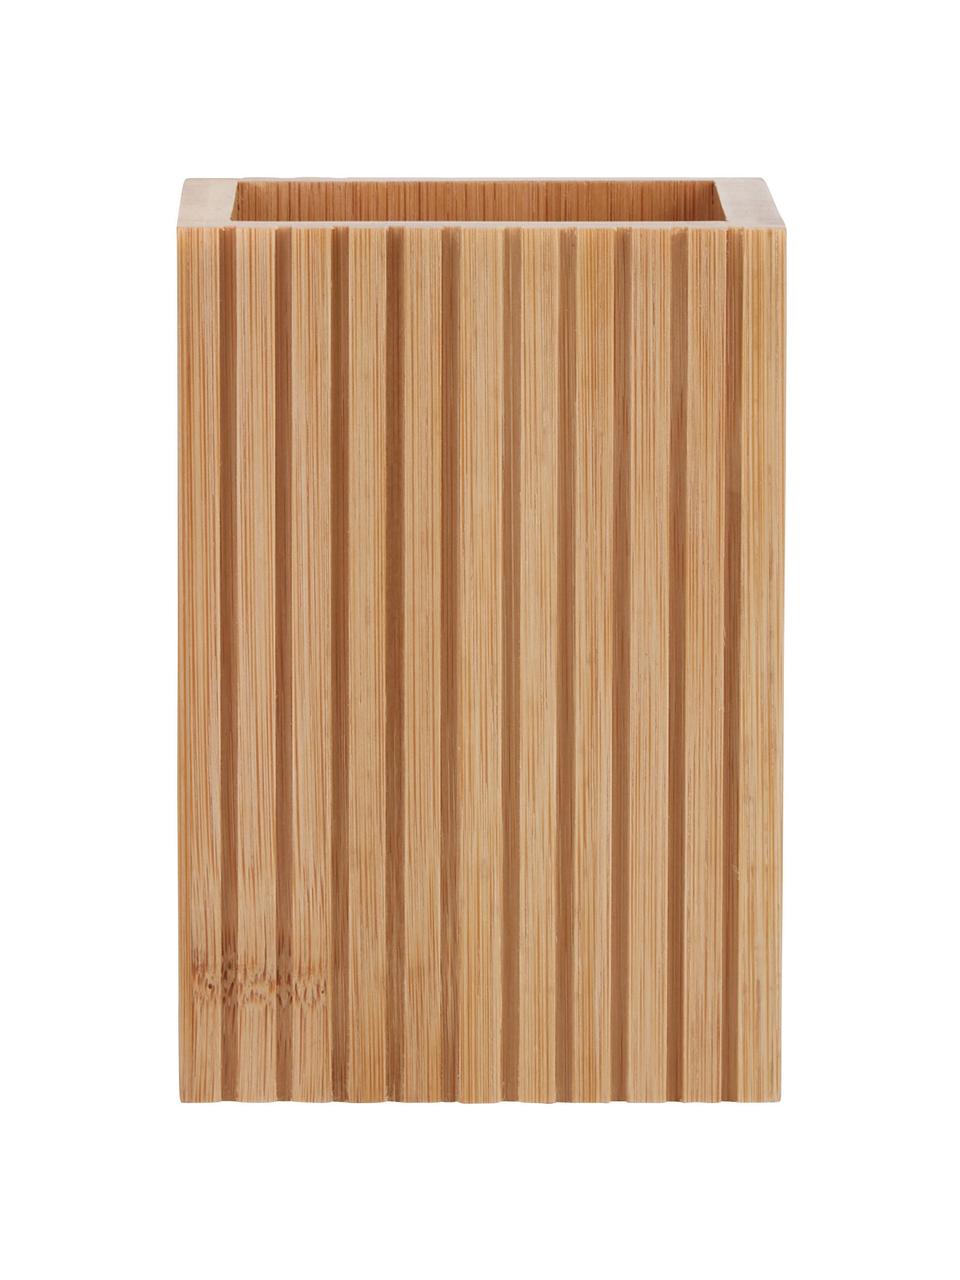 Kubek na szczoteczki z drewna bambusowego Island, Drewno naturalne, Brązowy, S 9 x W 12 cm